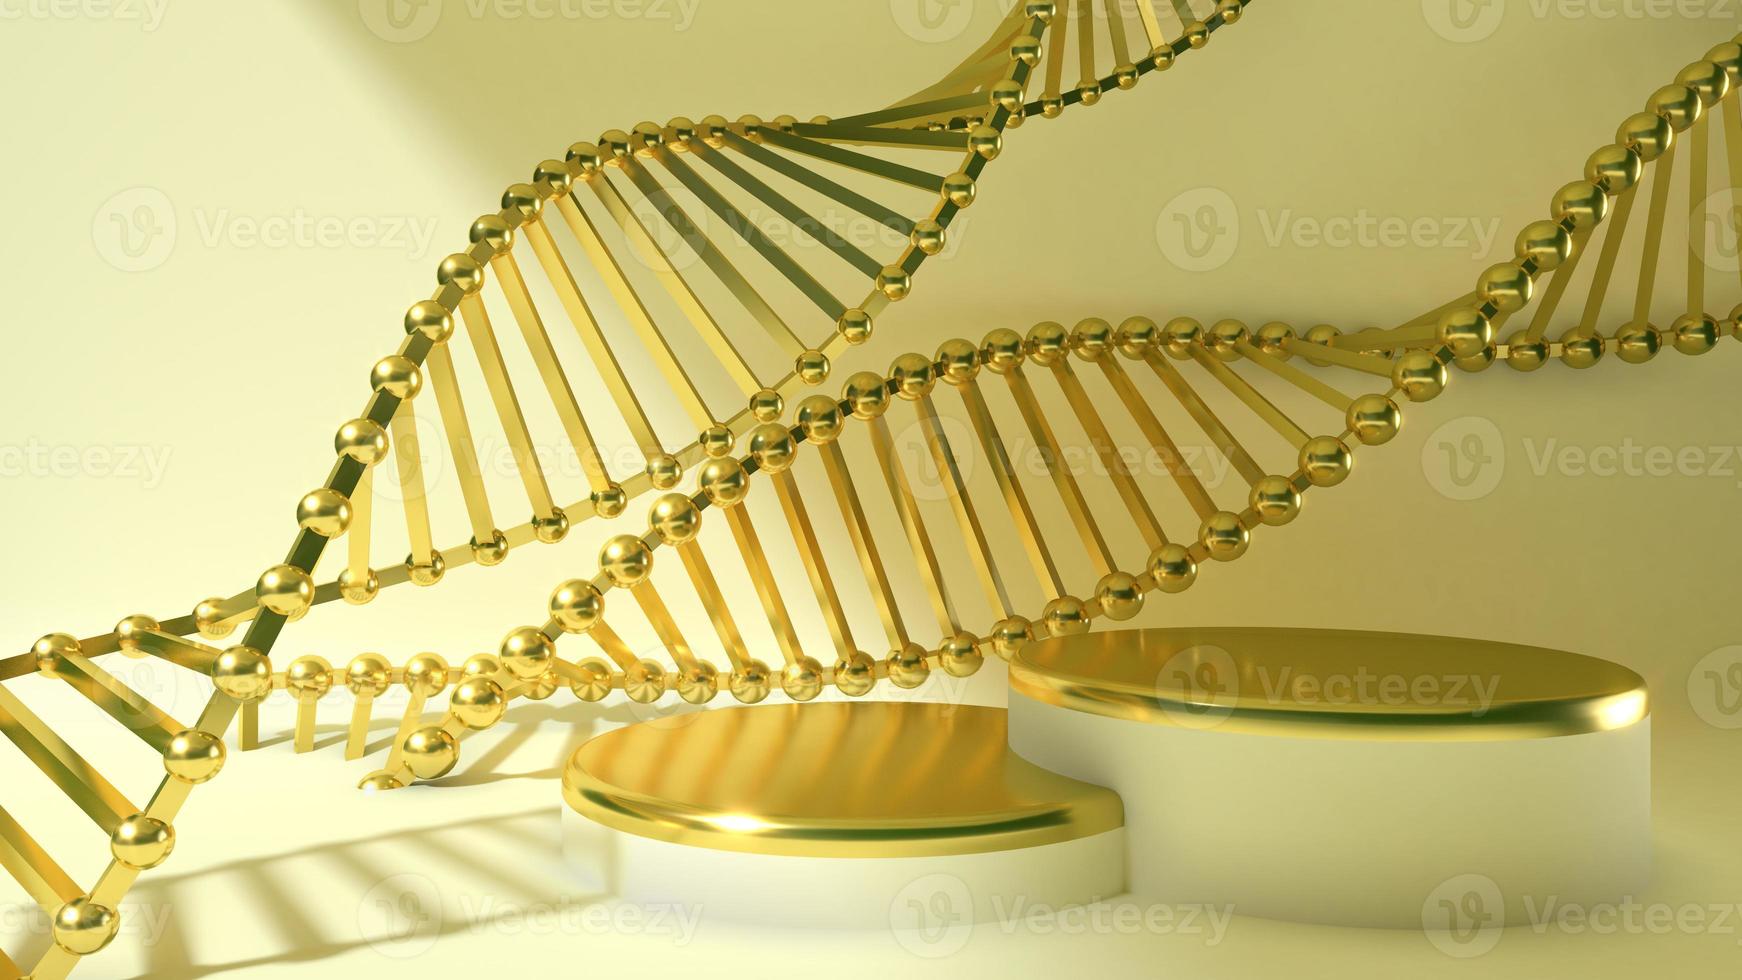 3d render cromosoma dorado en fondo de color beige.concepto científico para cosmética o atención médica, médica foto